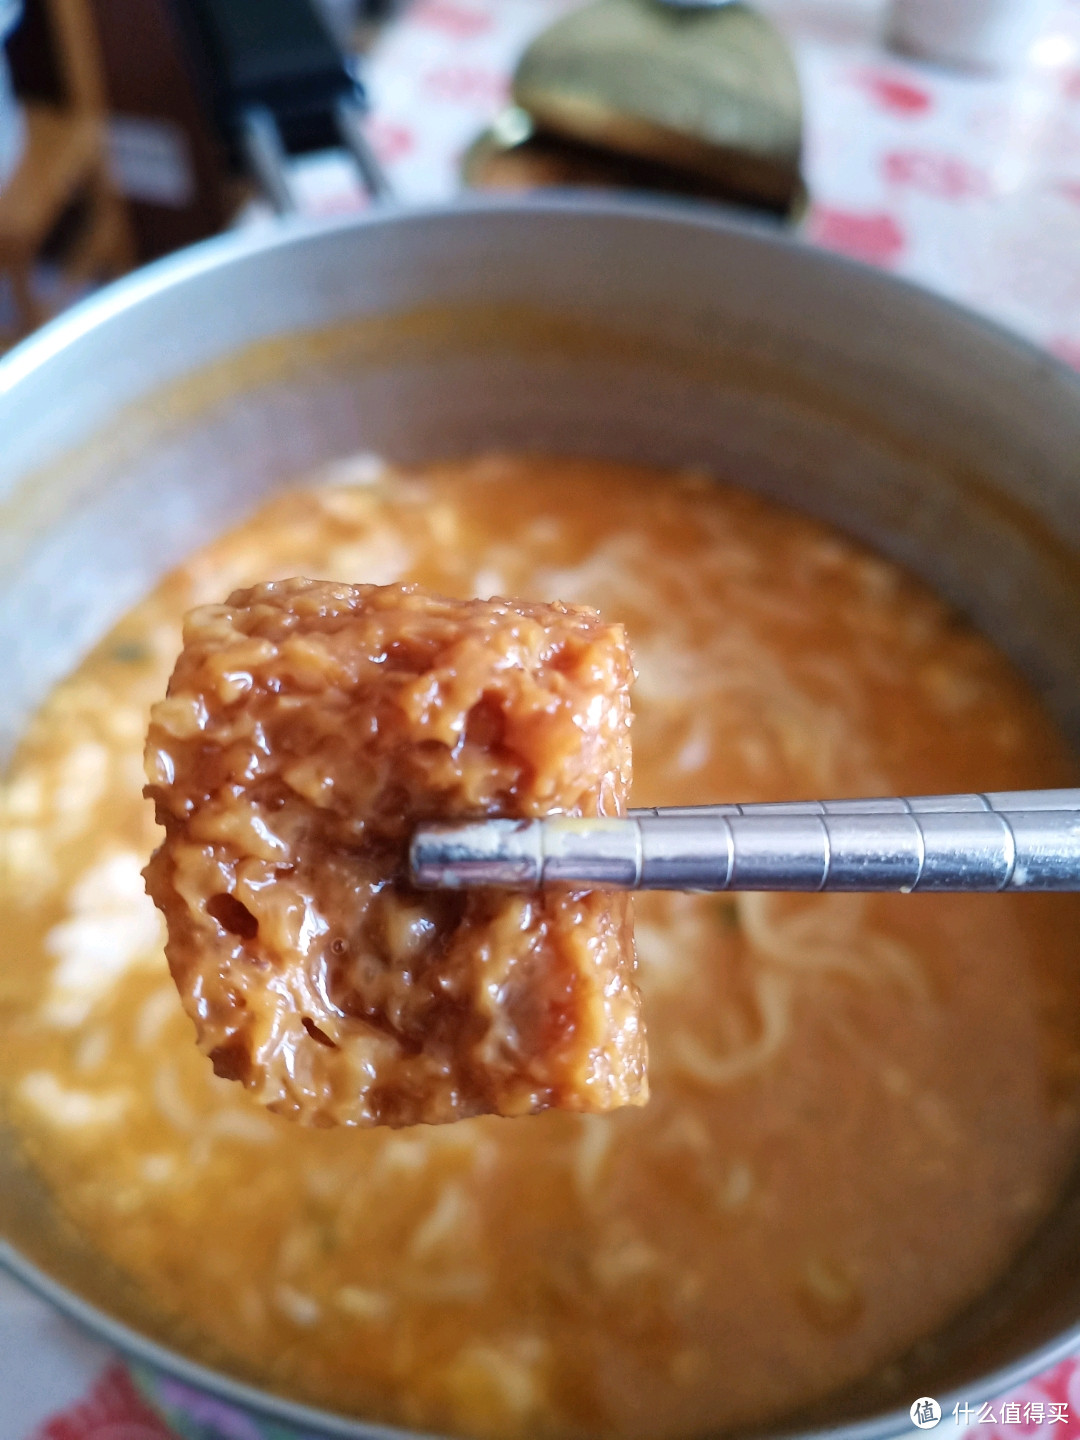 老少都爱吃，质保期不错的小众上海梅林蜜汁烤麸试吃体验，wonderfu